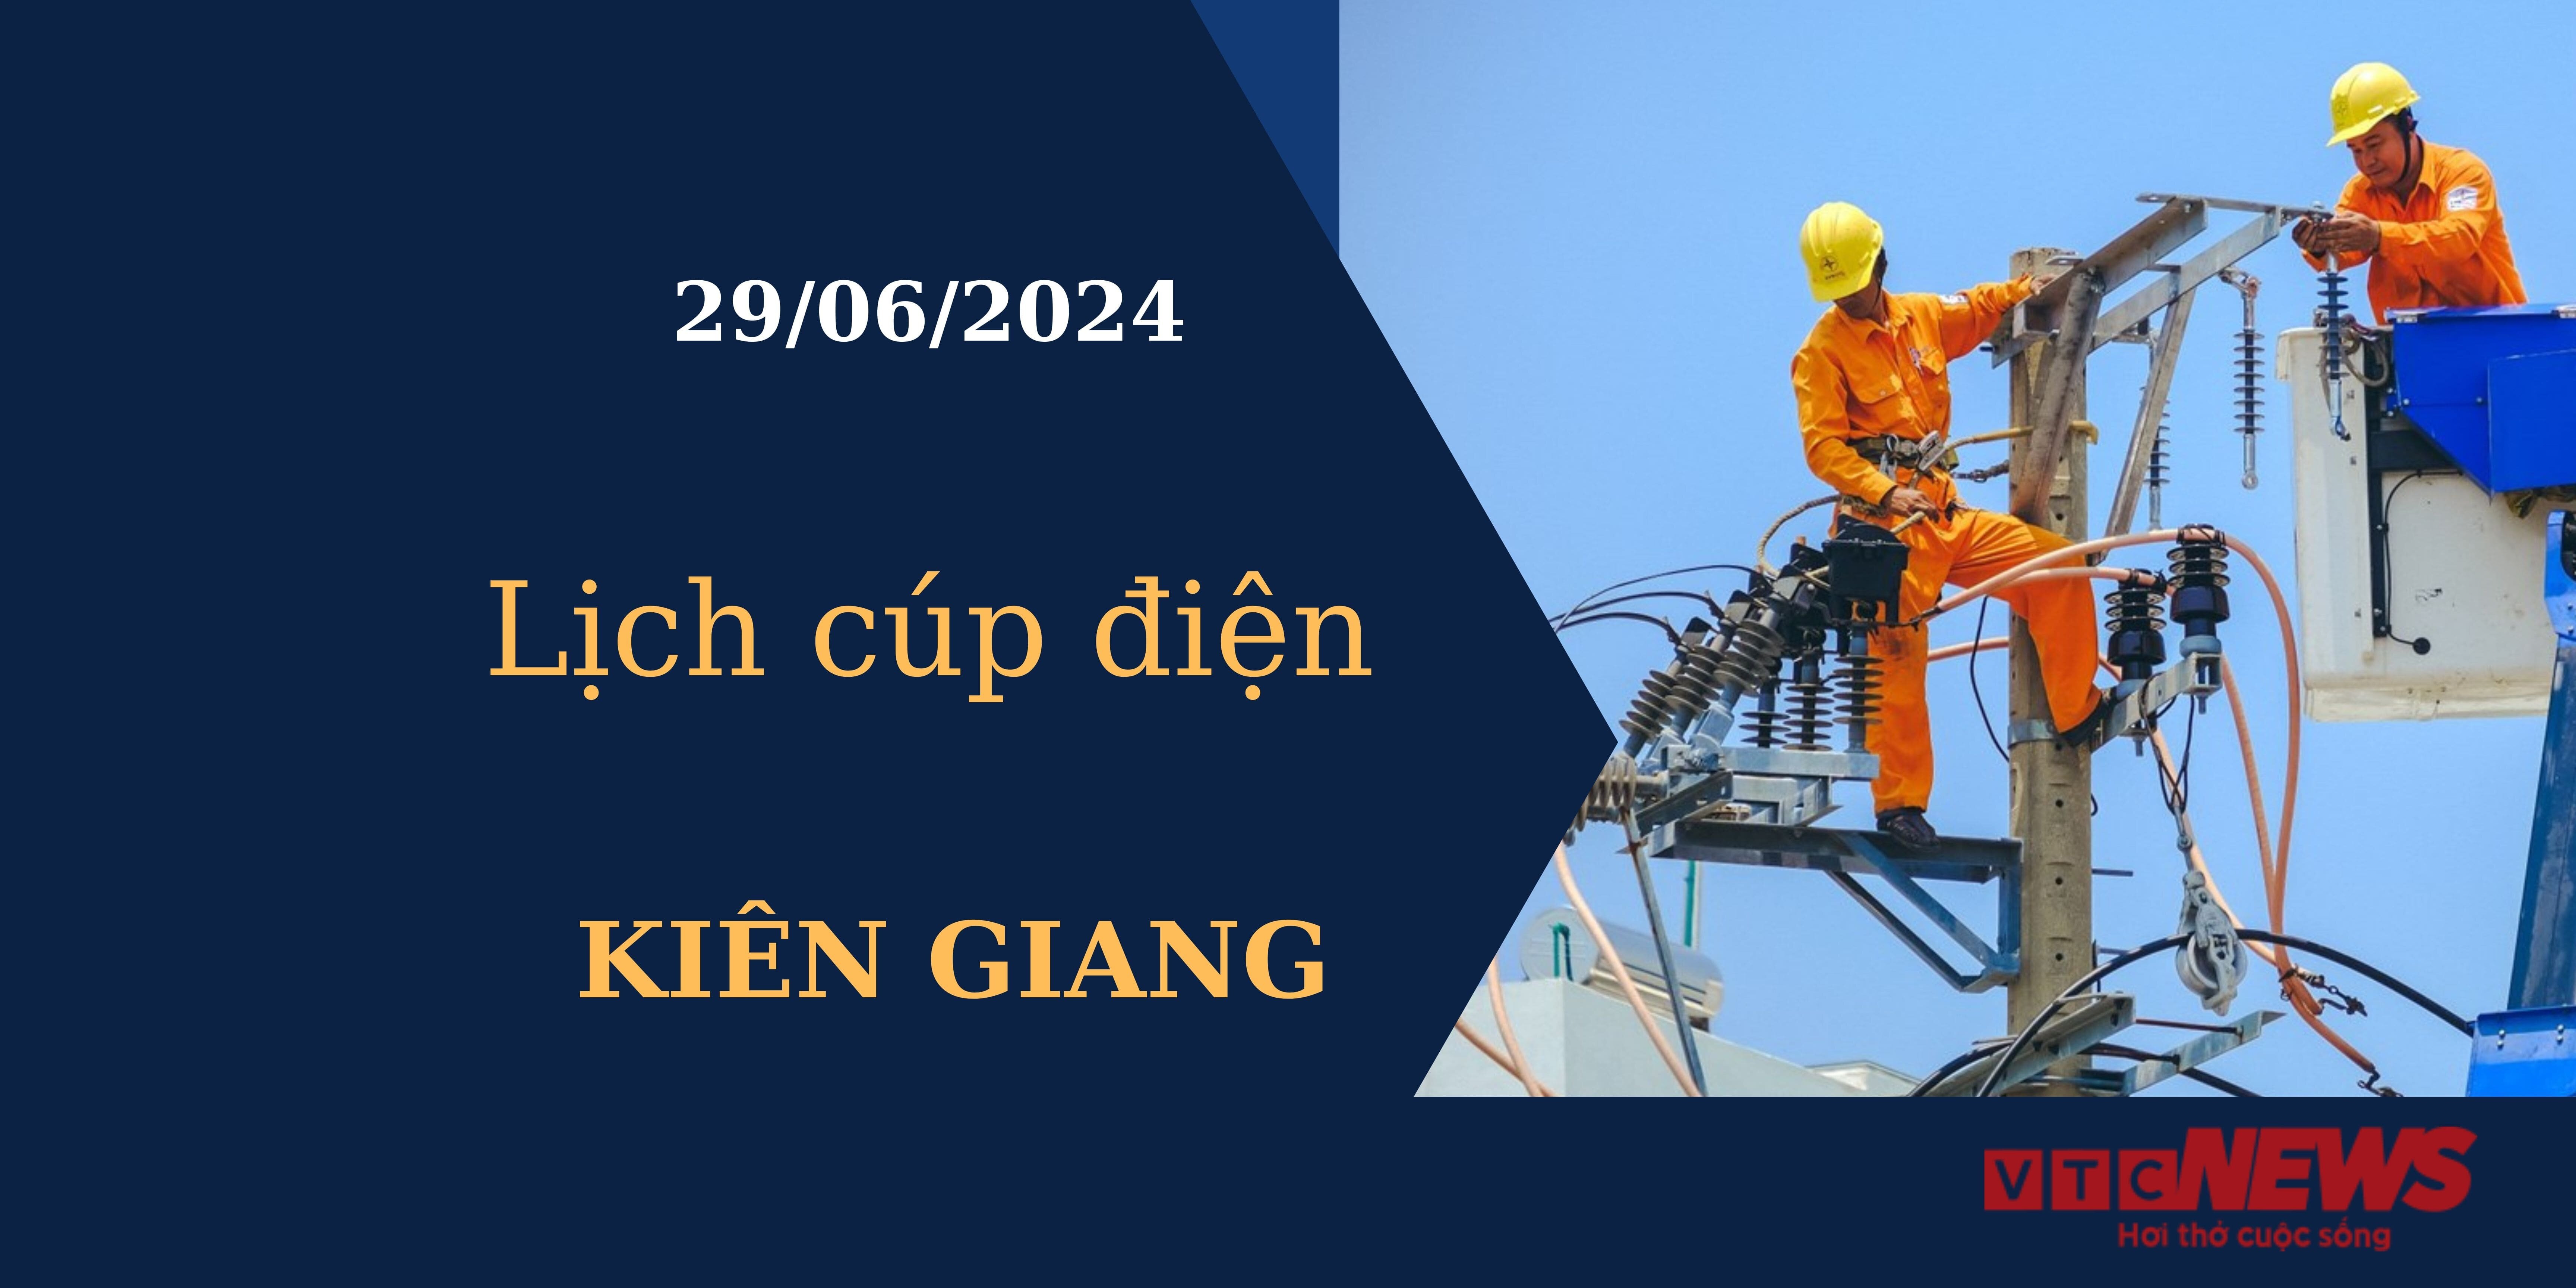 Lịch cúp điện hôm nay tại Kiên Giang ngày 29/06/2024